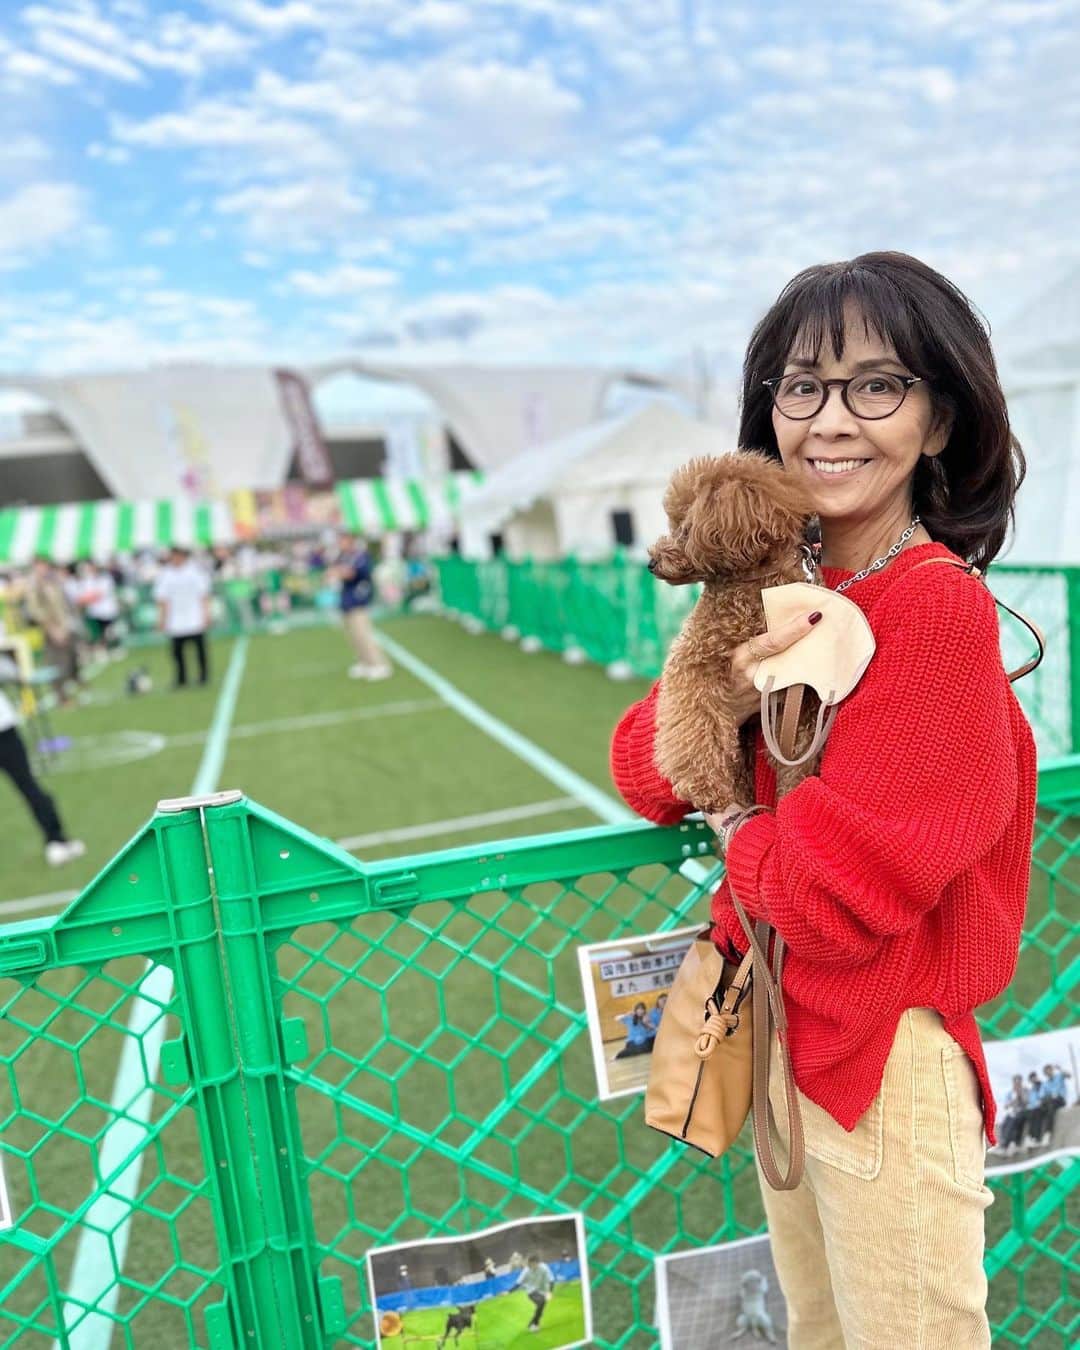 柏木由紀子のインスタグラム：「駒沢公園で開催されていたわんこ祭りに行ってきました。 あれだけたくさんのワンちゃんを一度に見たのは初めてかもしれません。みんなそれぞれに可愛かったです。 レアは圧倒されていましたよ😆 刺激ある休日でした。 今週も楽しい一週間となりますように。  　  #柏木由紀子ファッションクローゼット 好評発売中！ 全て私物 (ブランド詳細掲載あり) #楽天ブックスファッション部門1位獲得 #発売前重版 好評につき第二弾年内発売予定！  #坂本九音楽事務所 #坂本九 #坂本九柏木由紀子 #シニアファッション #シニア世代のファッション番長 #75歳 #70代コーディネート #60代コーディネート #50代コーディネート #柏木マダム #カシワギマダム #由紀子巻き #60代ヘアスタイル」